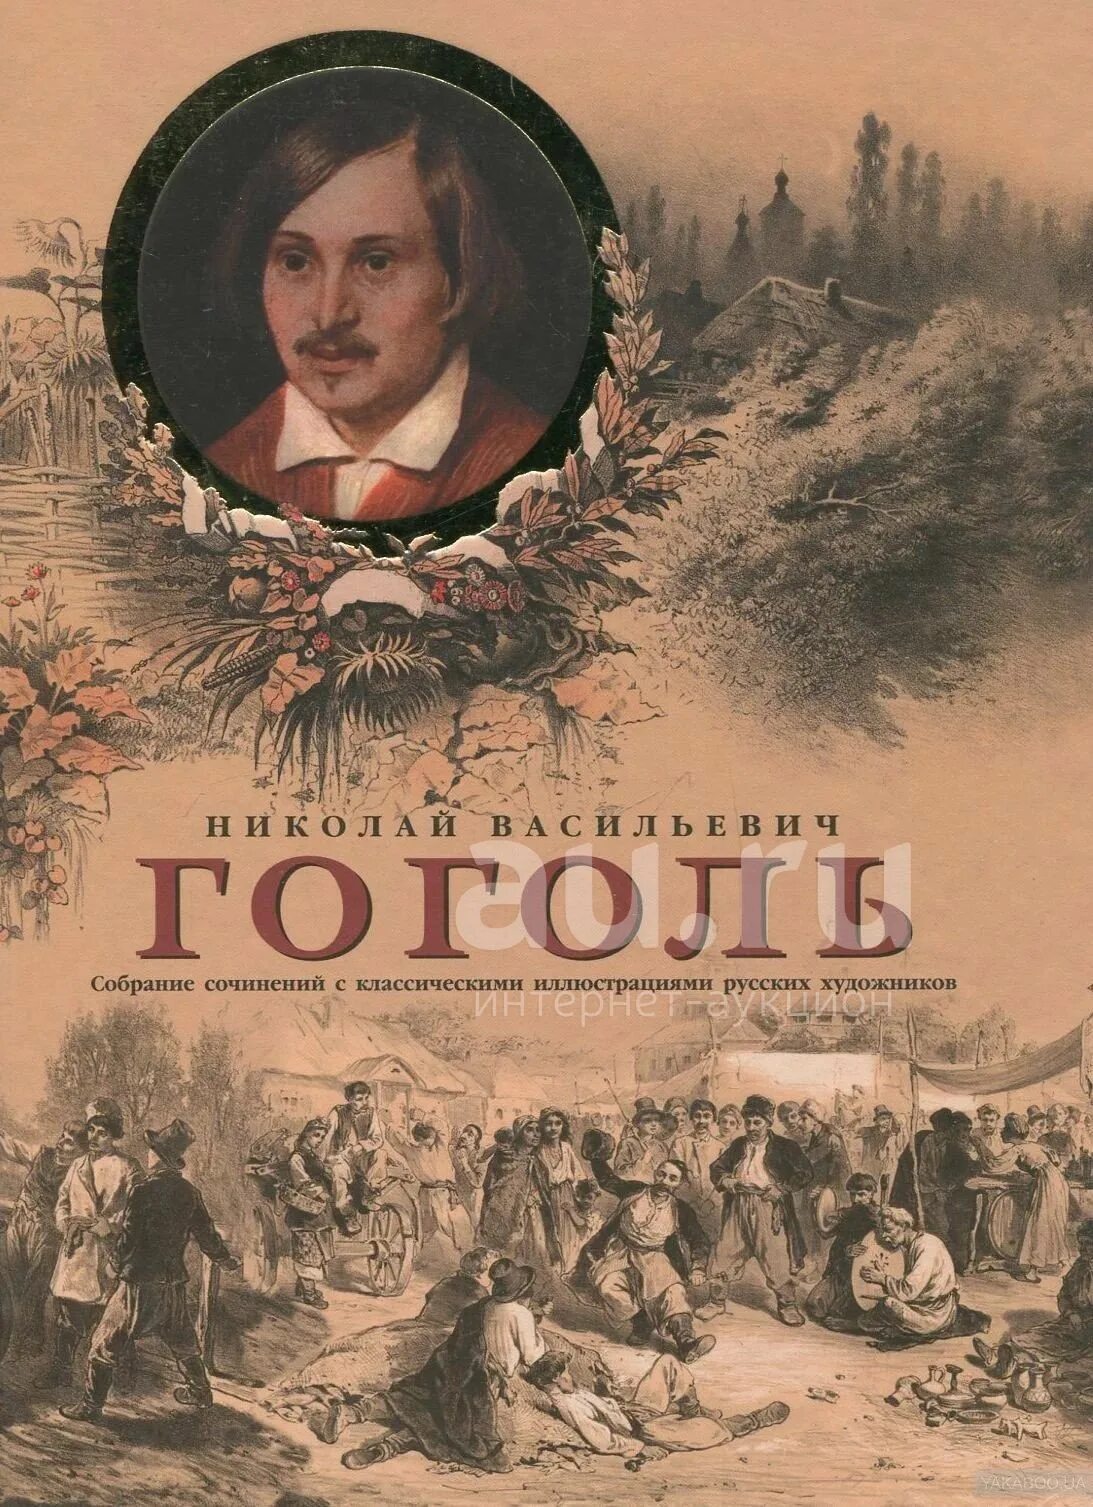 Обложки книг Гоголя. Названия произведений гоголя